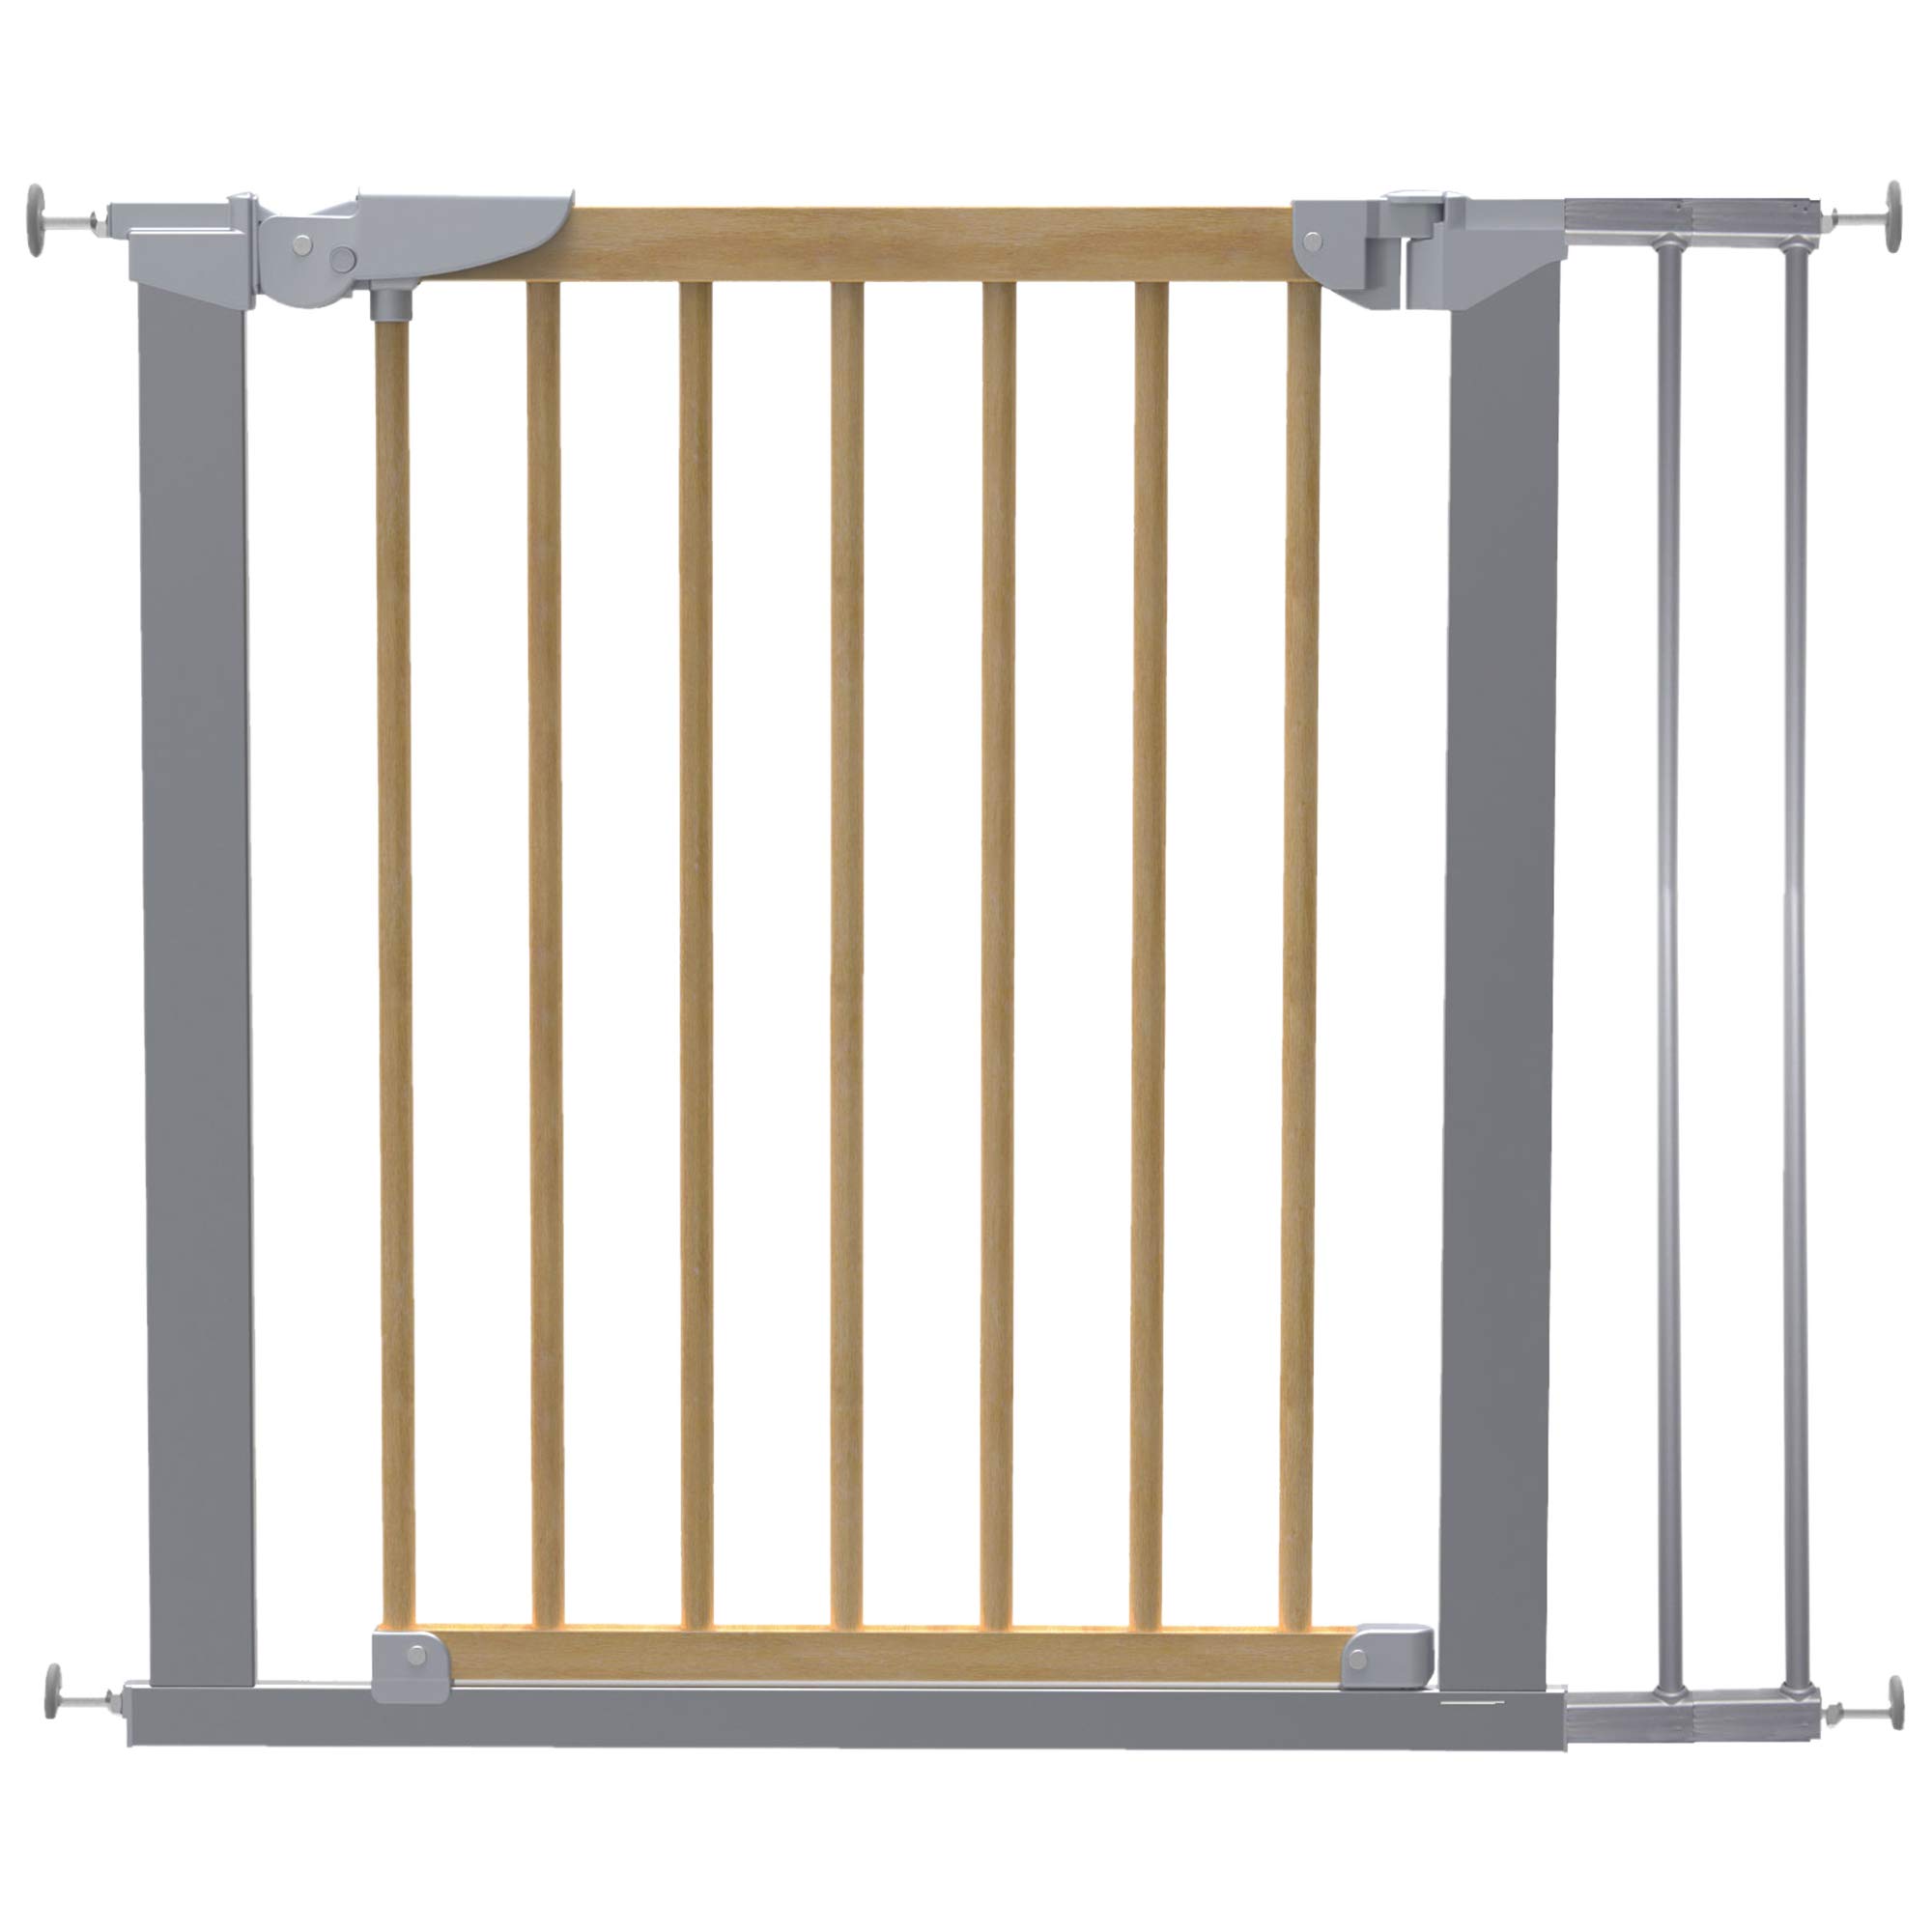 DOLLE Türschutzgitter aus Holz/Metall | Schwenkgitter | Breite: 71,30-110,60 cm | Höhe: 73 cm | Farbe: grau metallic | Kindersicherheitsgitter mit Einhand-Sicherheitsverschluss | TÜV/GS geprüft